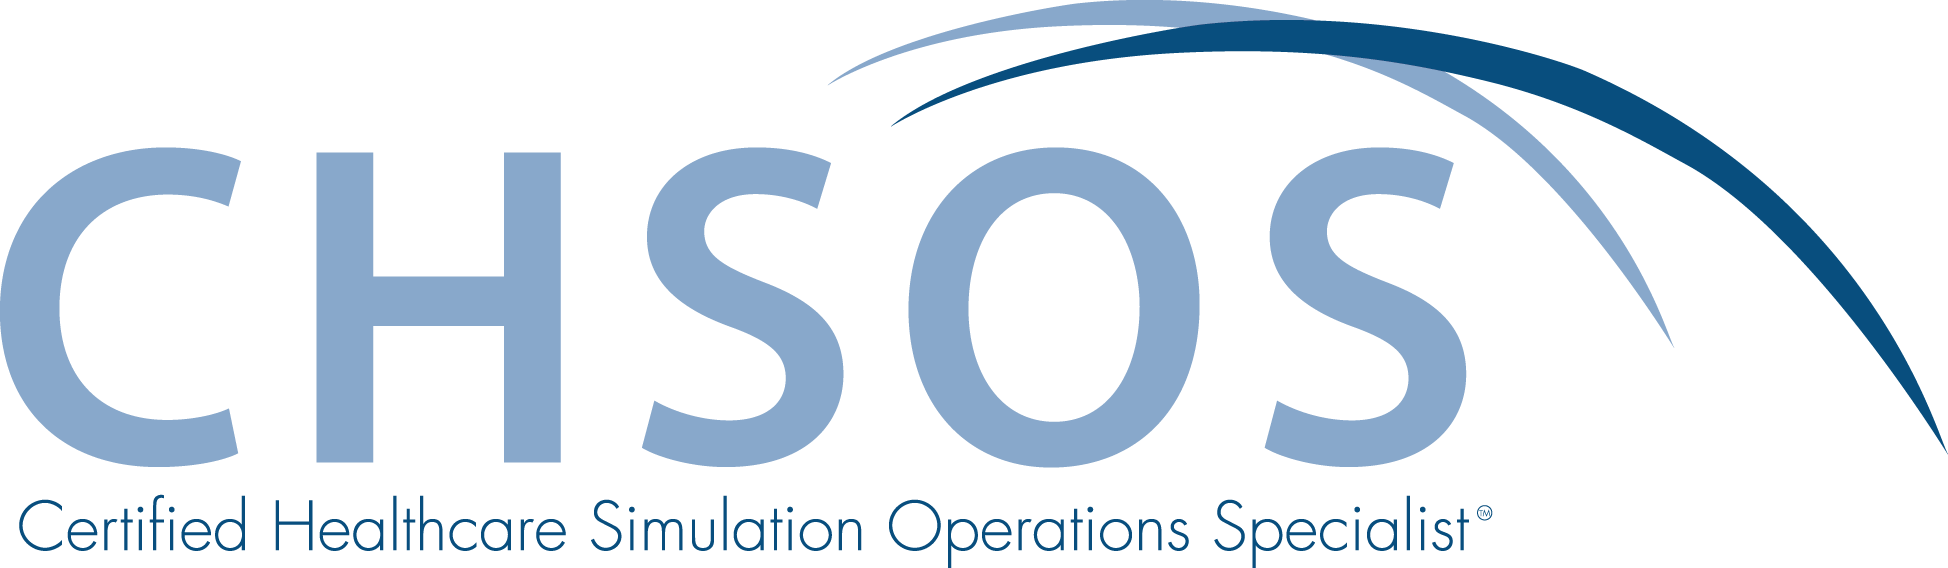 CHSOS-logo